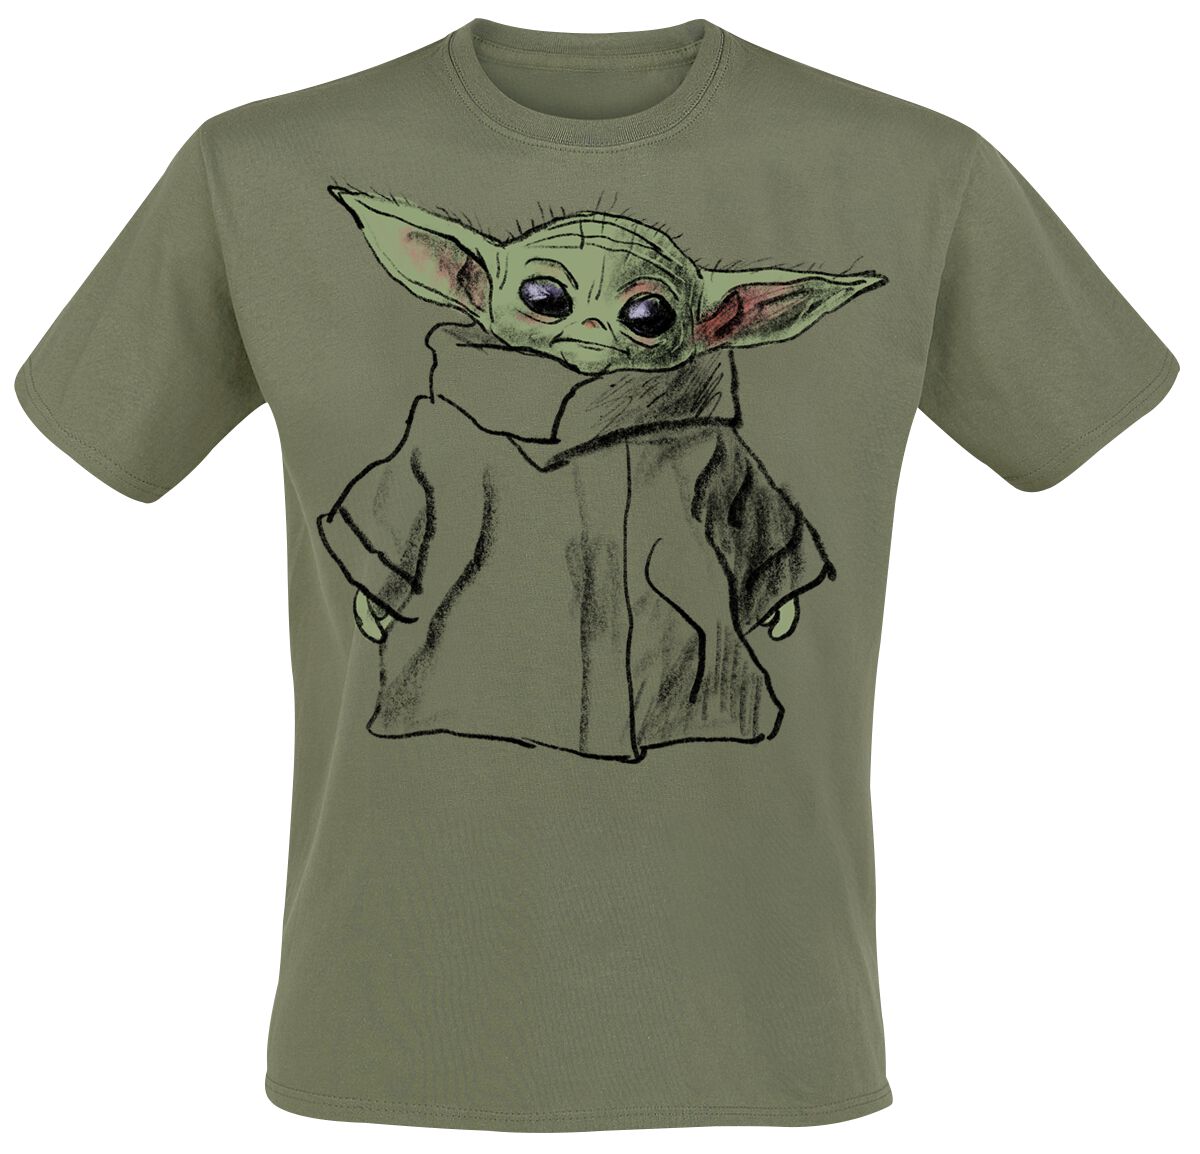 Star Wars T-Shirt - The Mandalorian - Grogu - Sketch - S bis XXL - für Männer - Größe XL - grün  - EMP exklusives Merchandise!